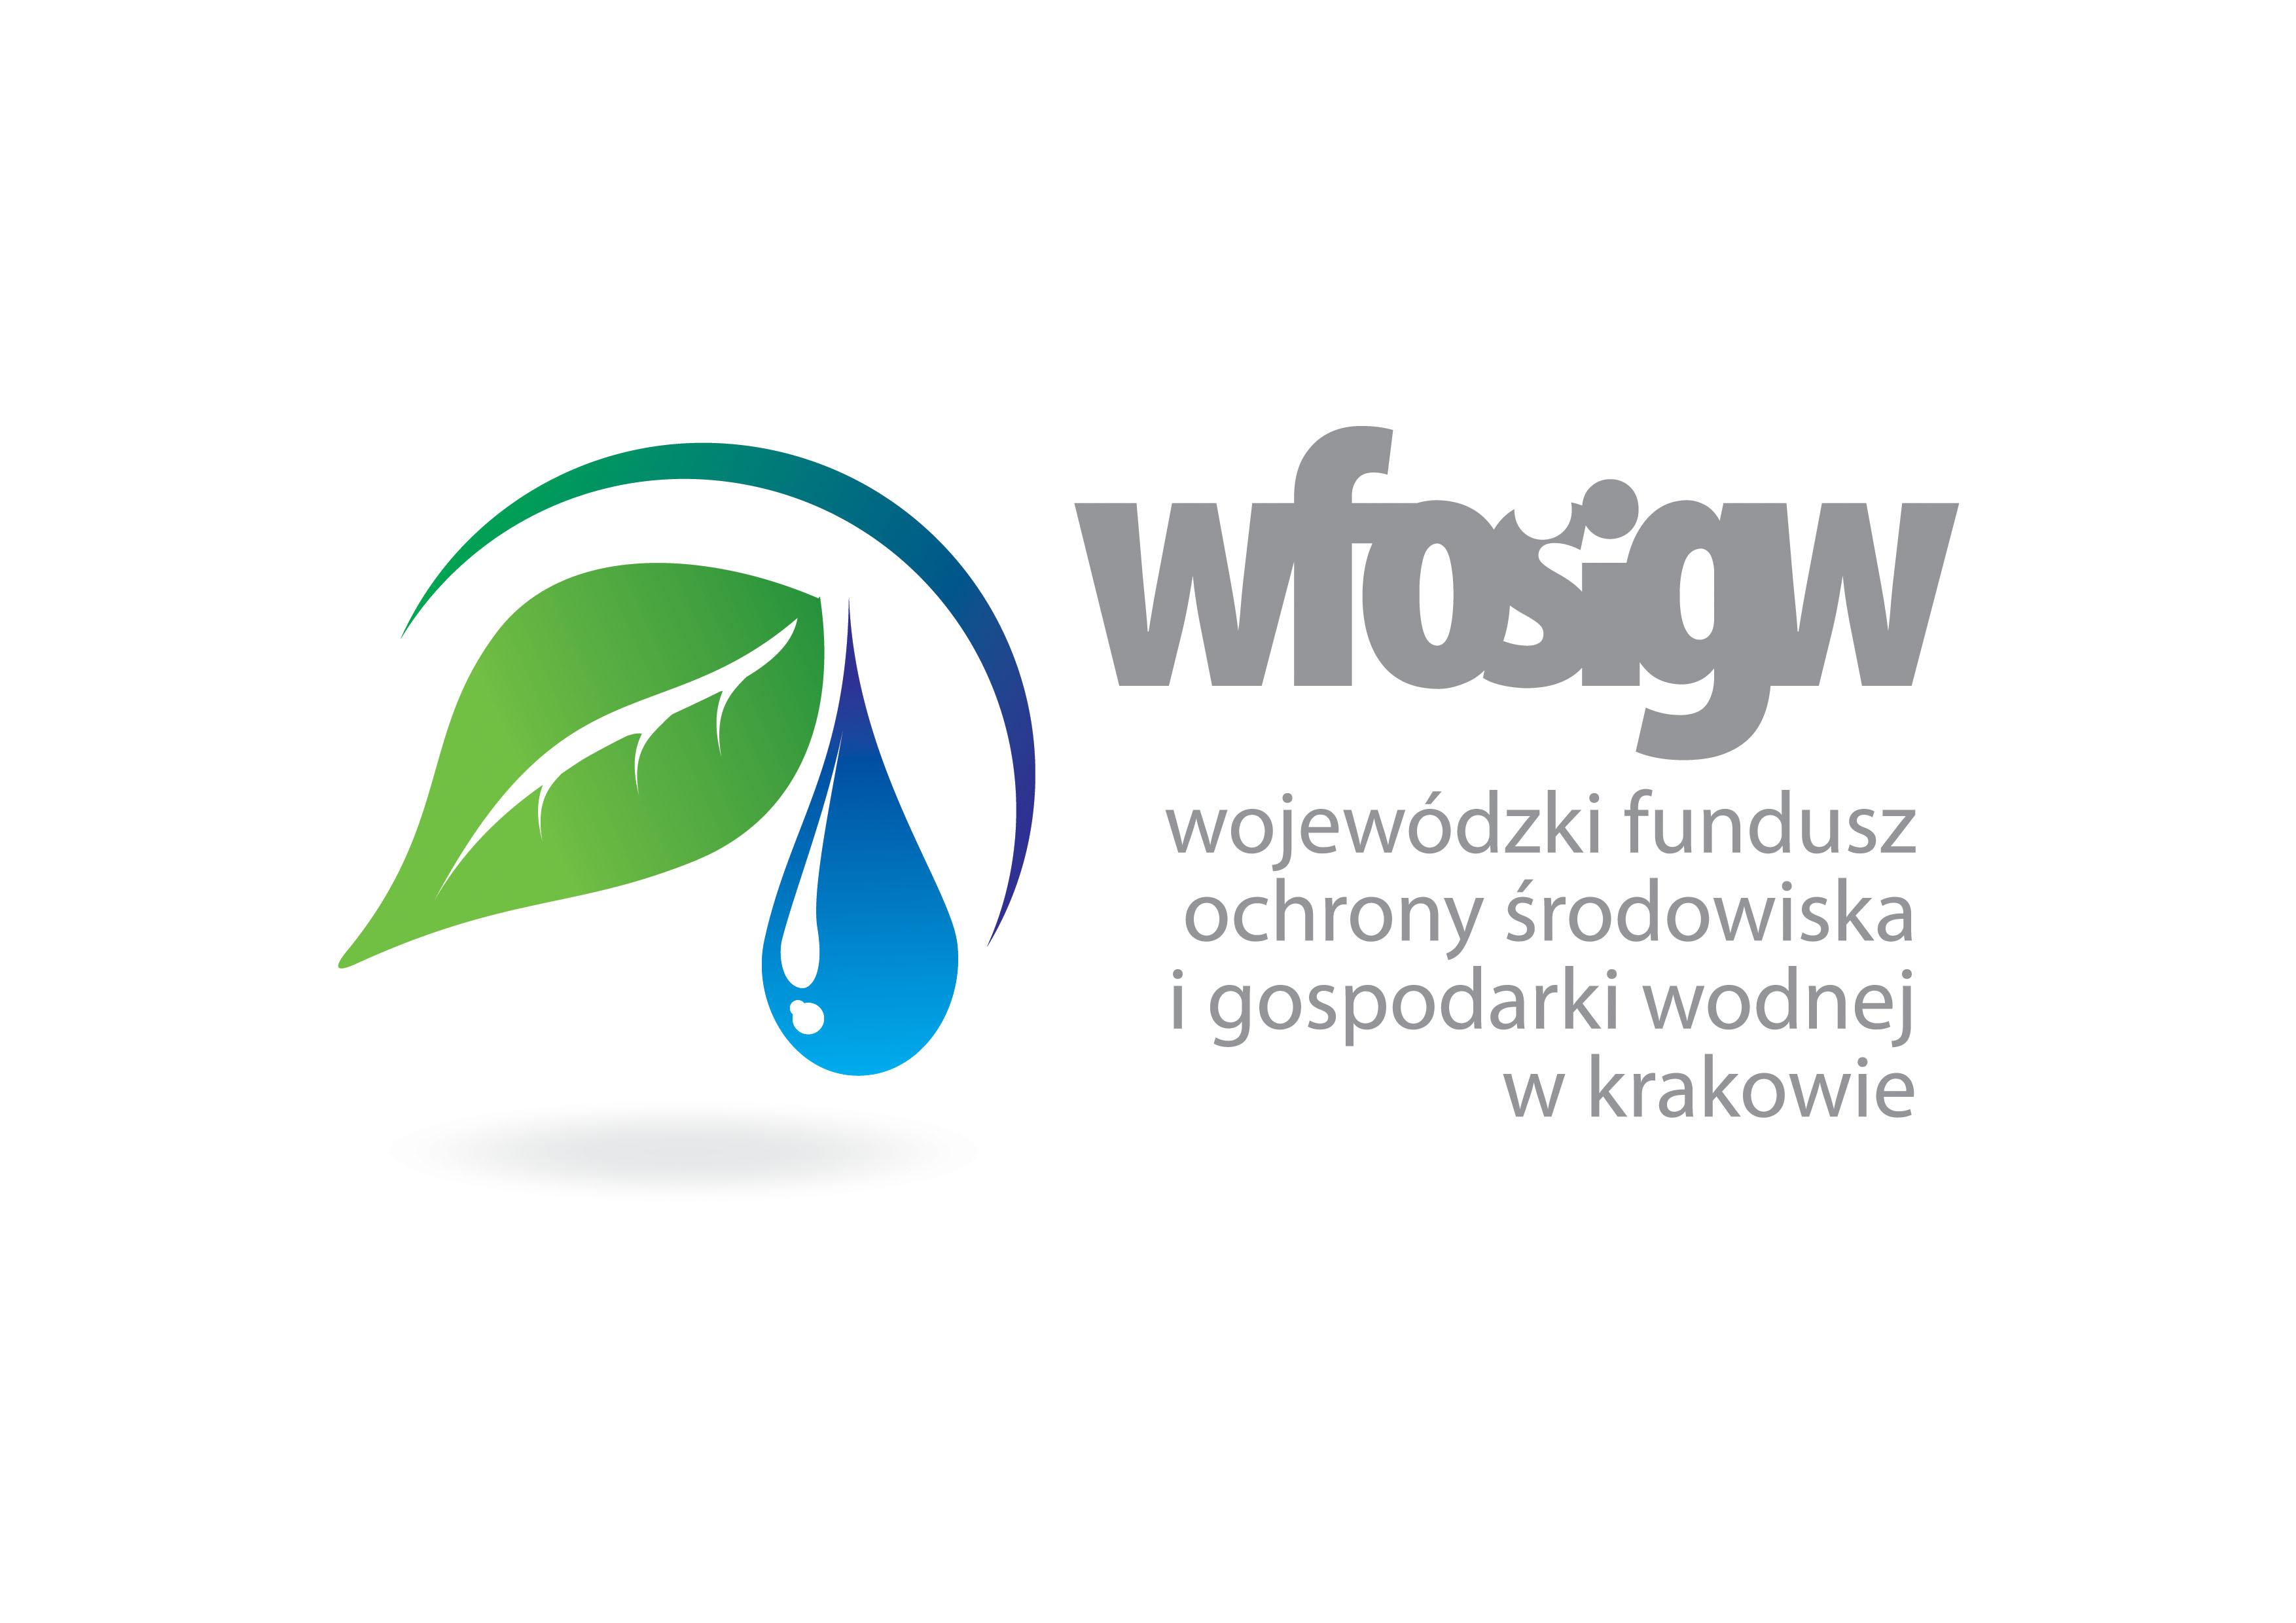 Logo Wojewódzkiego Funduszu Ochrony Środowiska i Gospodarki Wodnej w Krakowie zawierajace zielony liść i niebieską kroplę wody